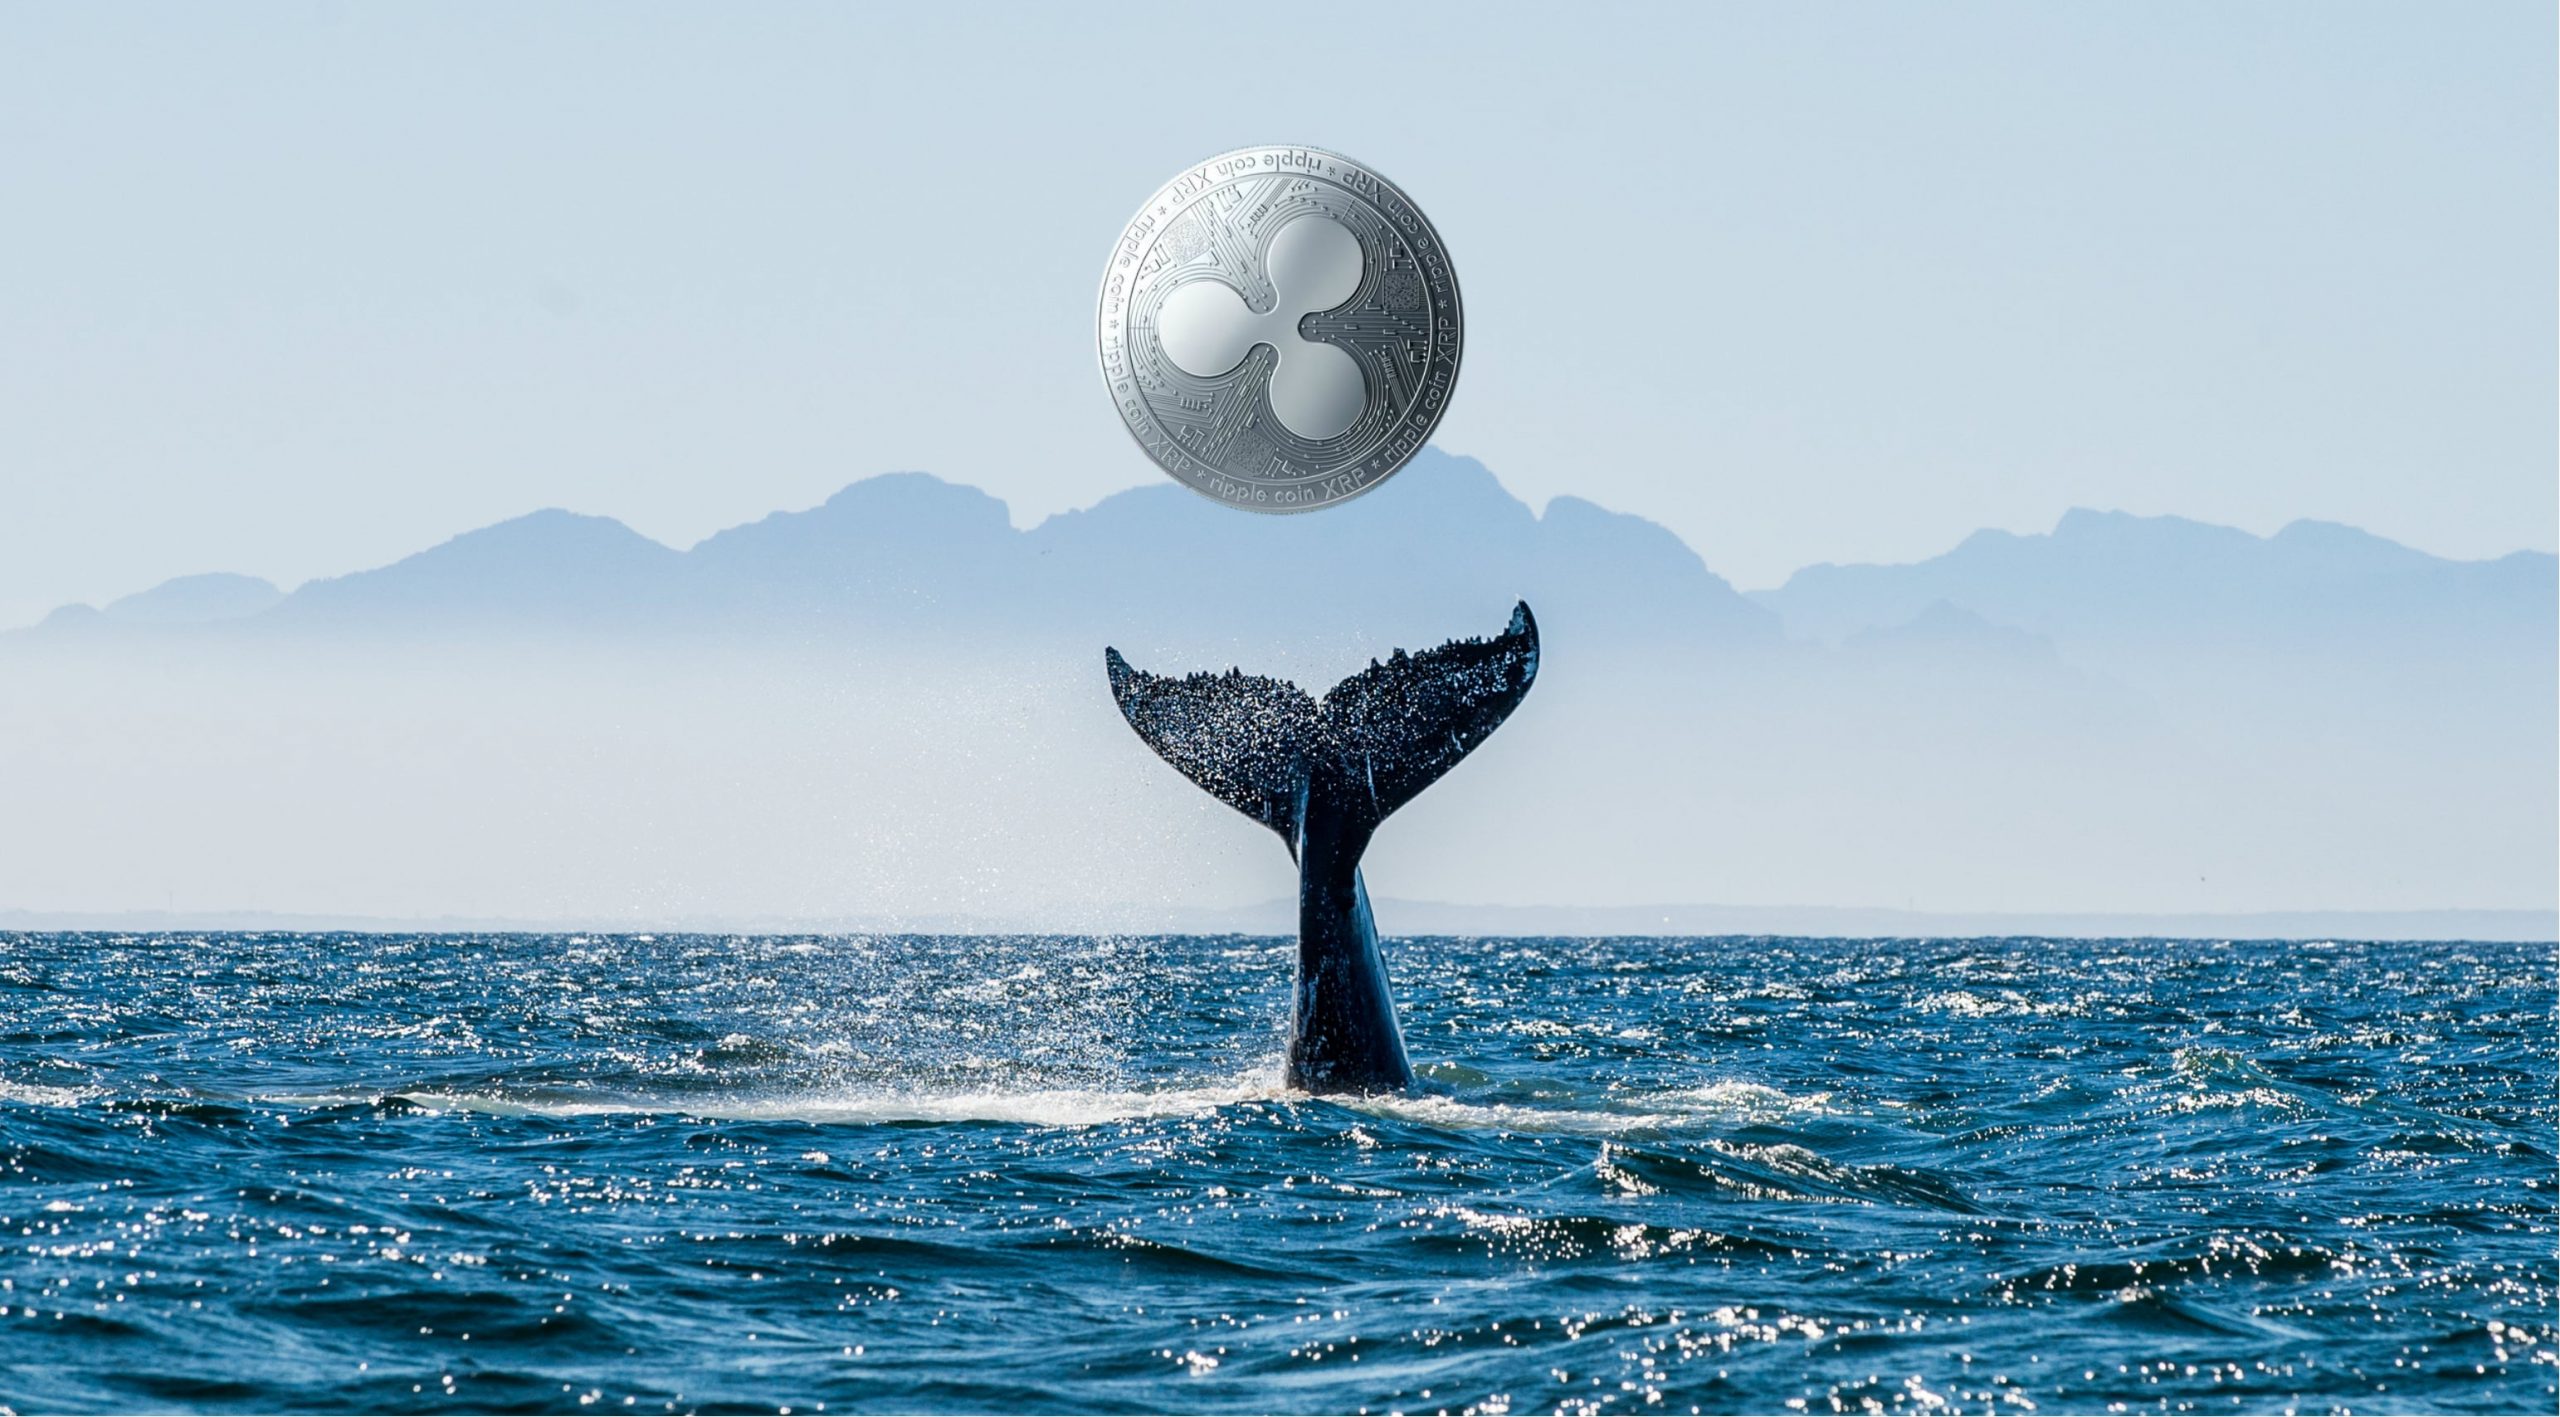 نهنگ ریپل scaled - شرکت تحلیل داده سنتیمنت: نهنگ ها در حال انباشت ریپل و چین لینک هستند